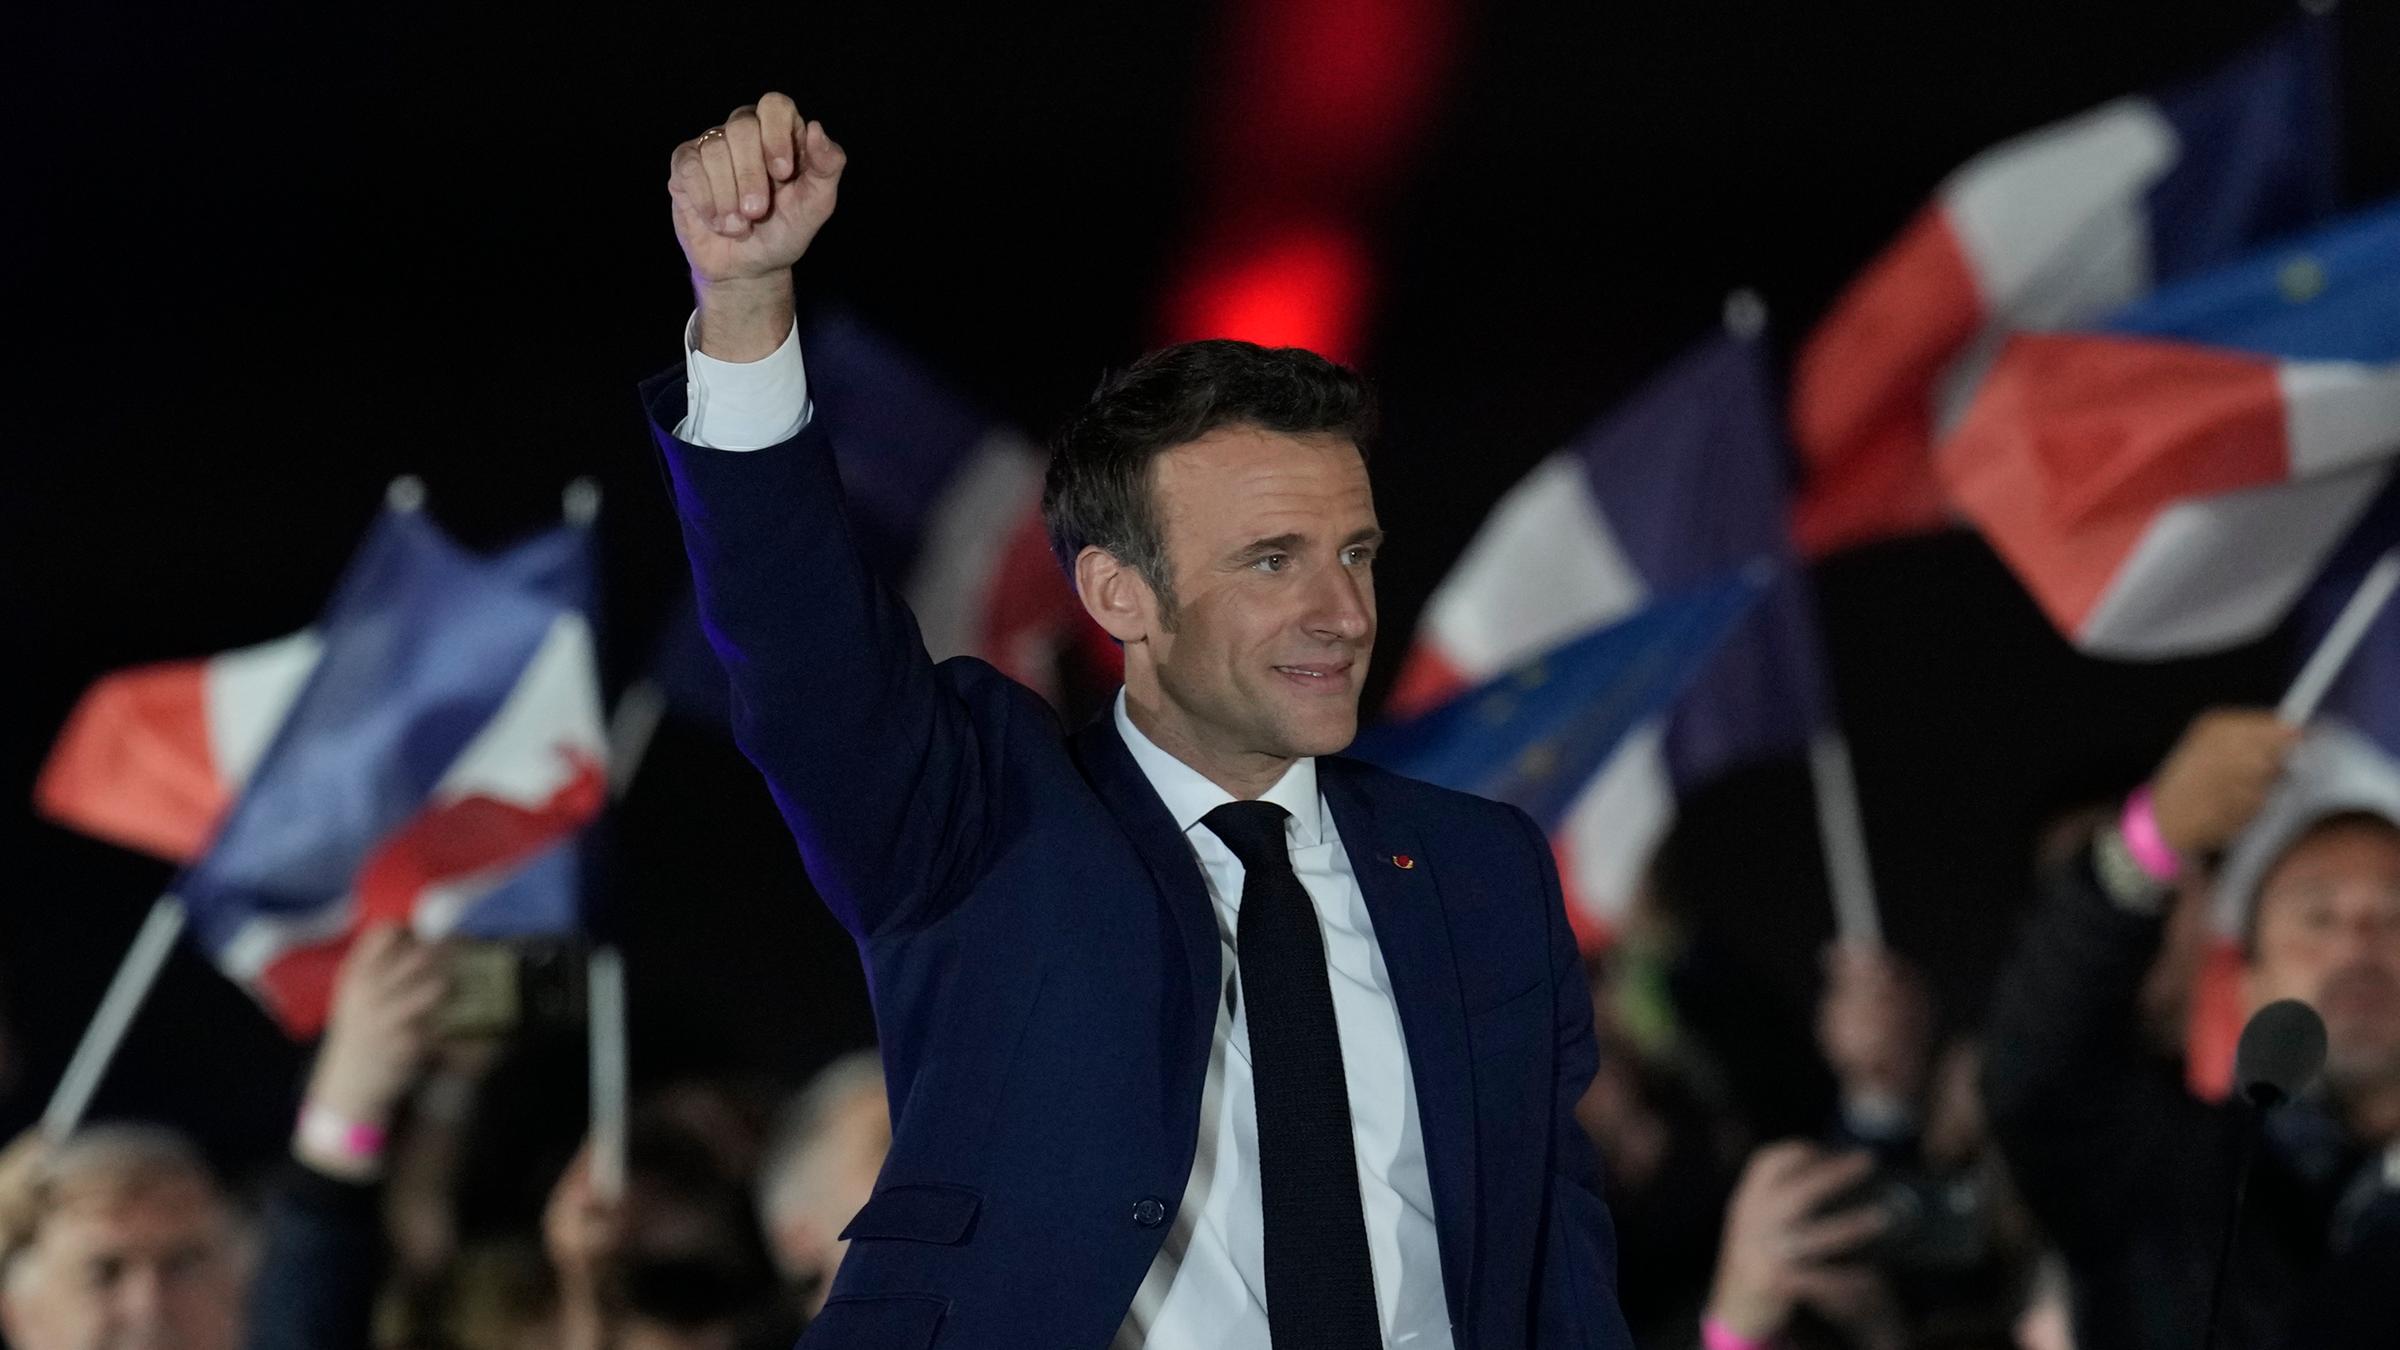 Der französische Präsident Emmanuel Macron feiert seine Wiederwahl vor Anhängern.